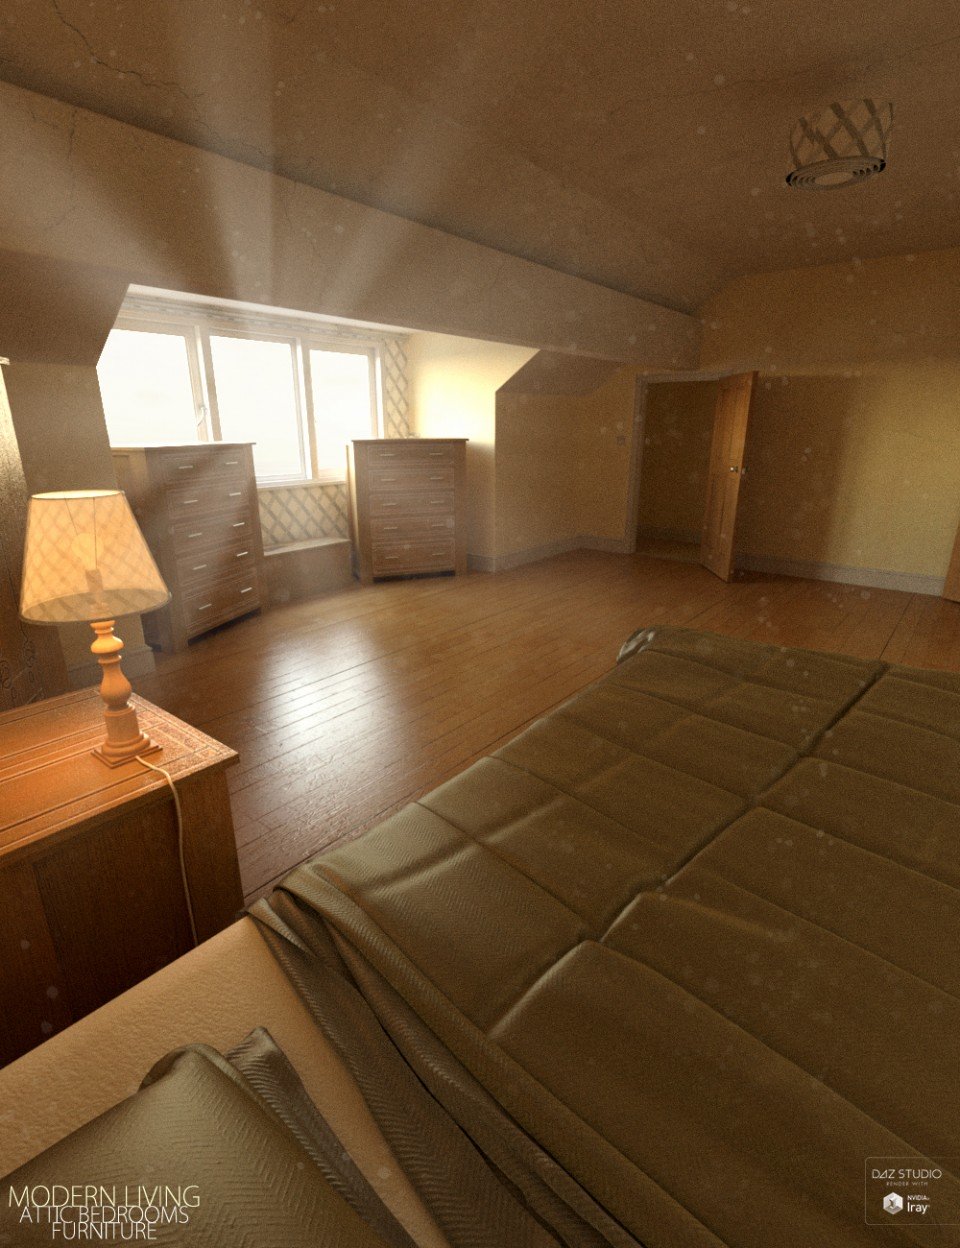 Modern Living Attic Bedroom Furniture_DAZ3DDL